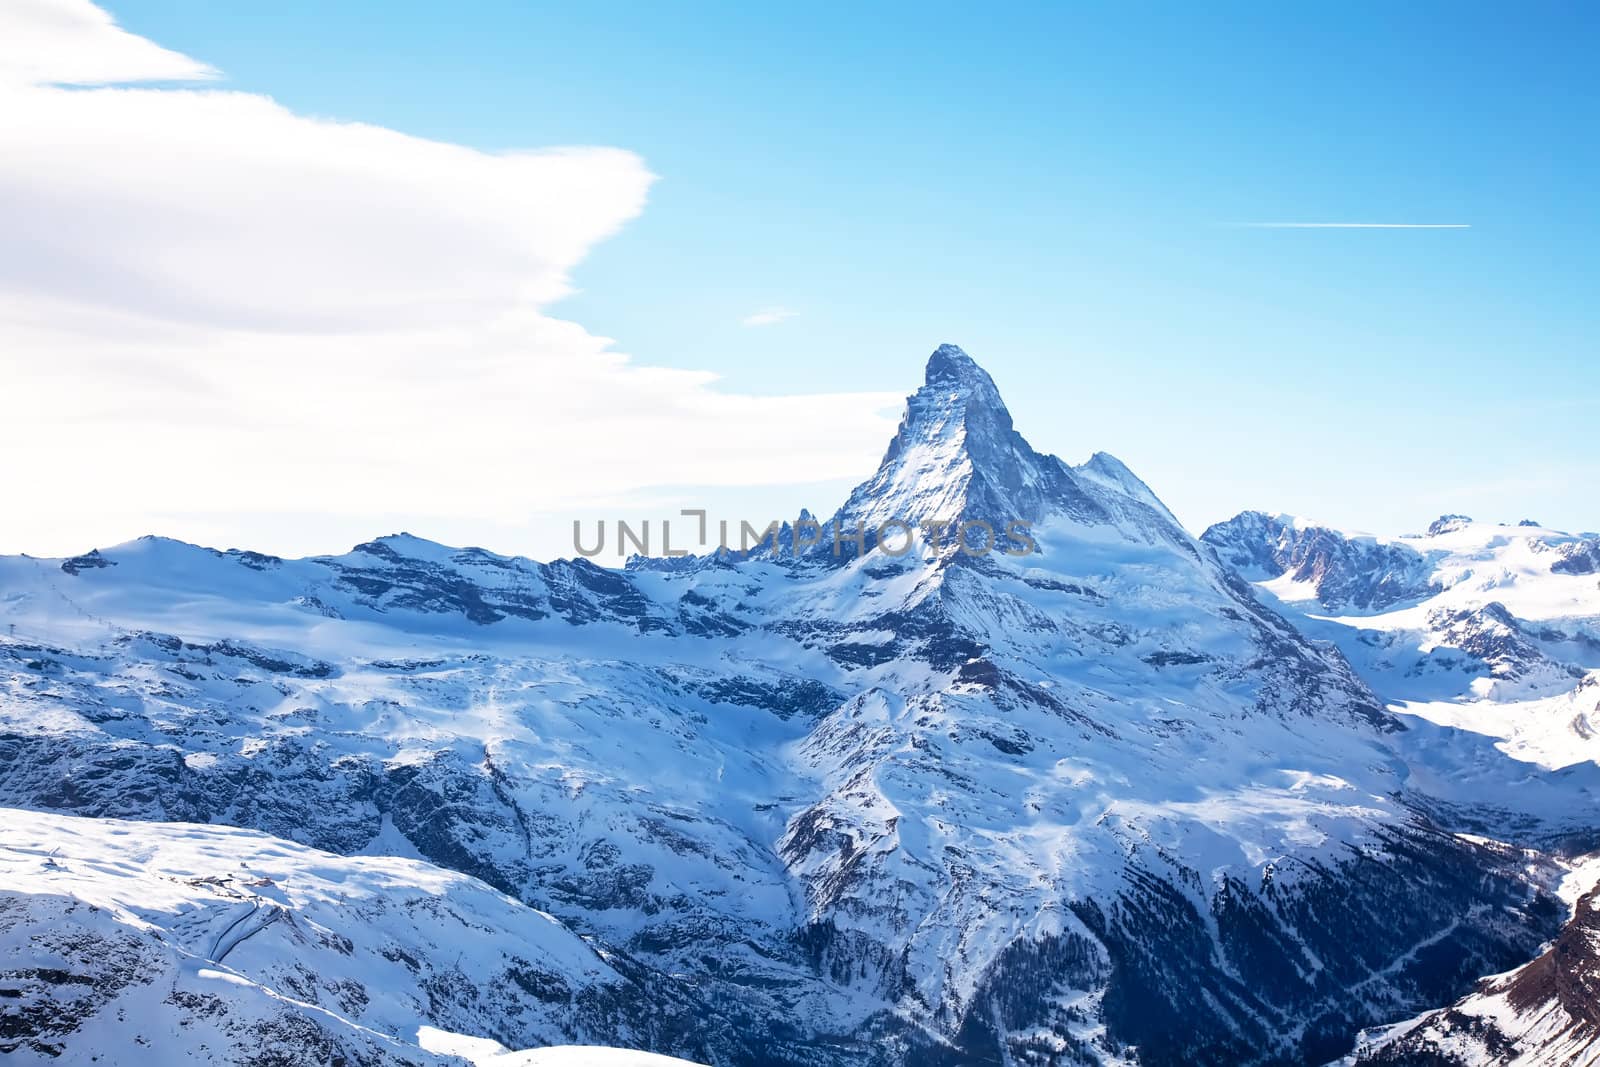 Matterhorn peak in winter in Switzerland by RawGroup